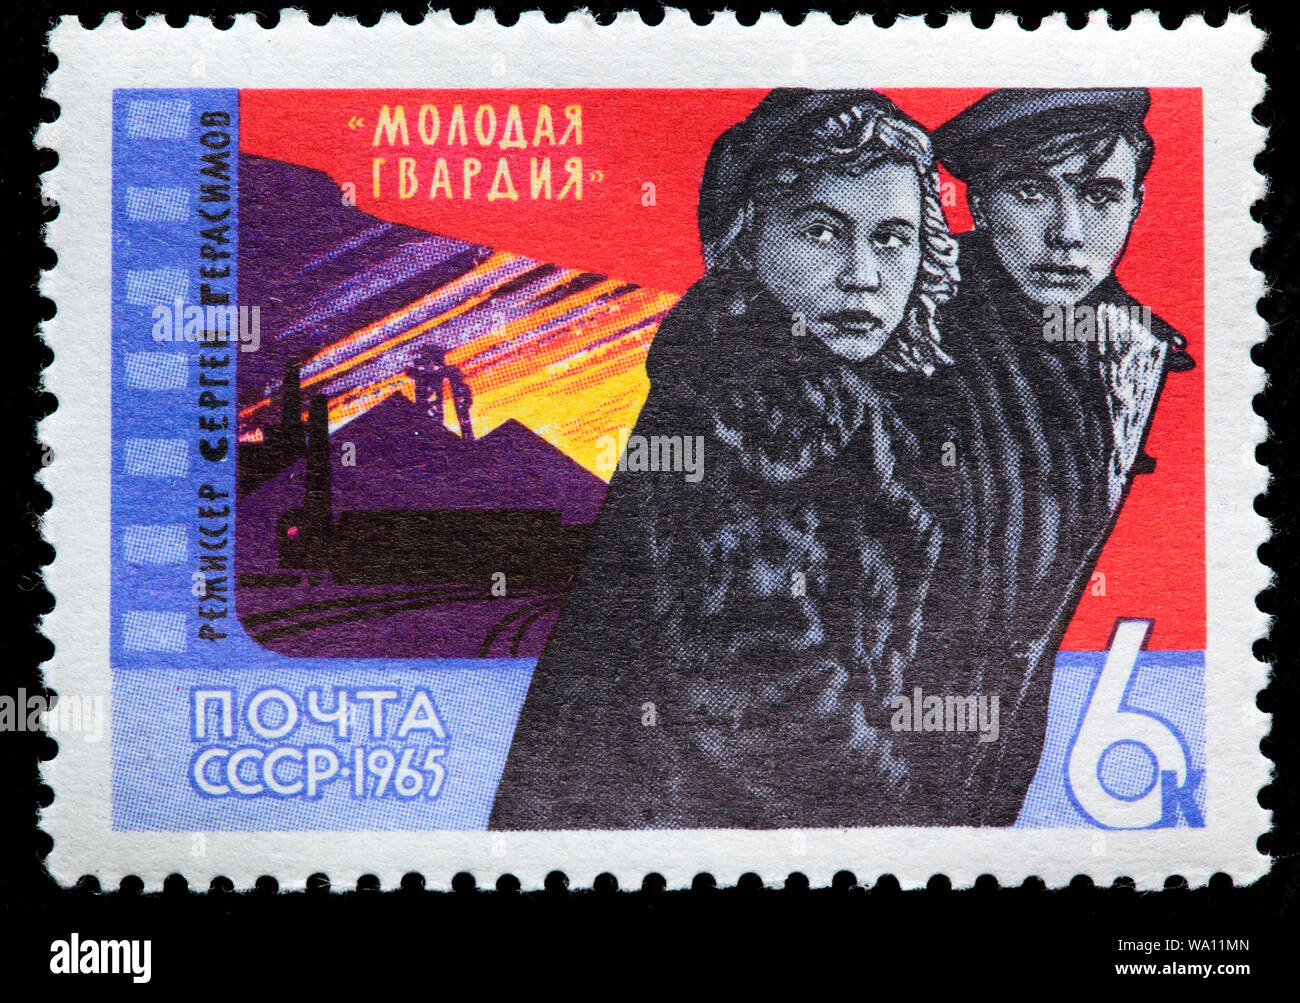 Escena de la Joven Guardia cine, Sergei Gerasimov, 1948, Arte Cine soviético, sello, Rusia, URSS, 1965 Foto de stock